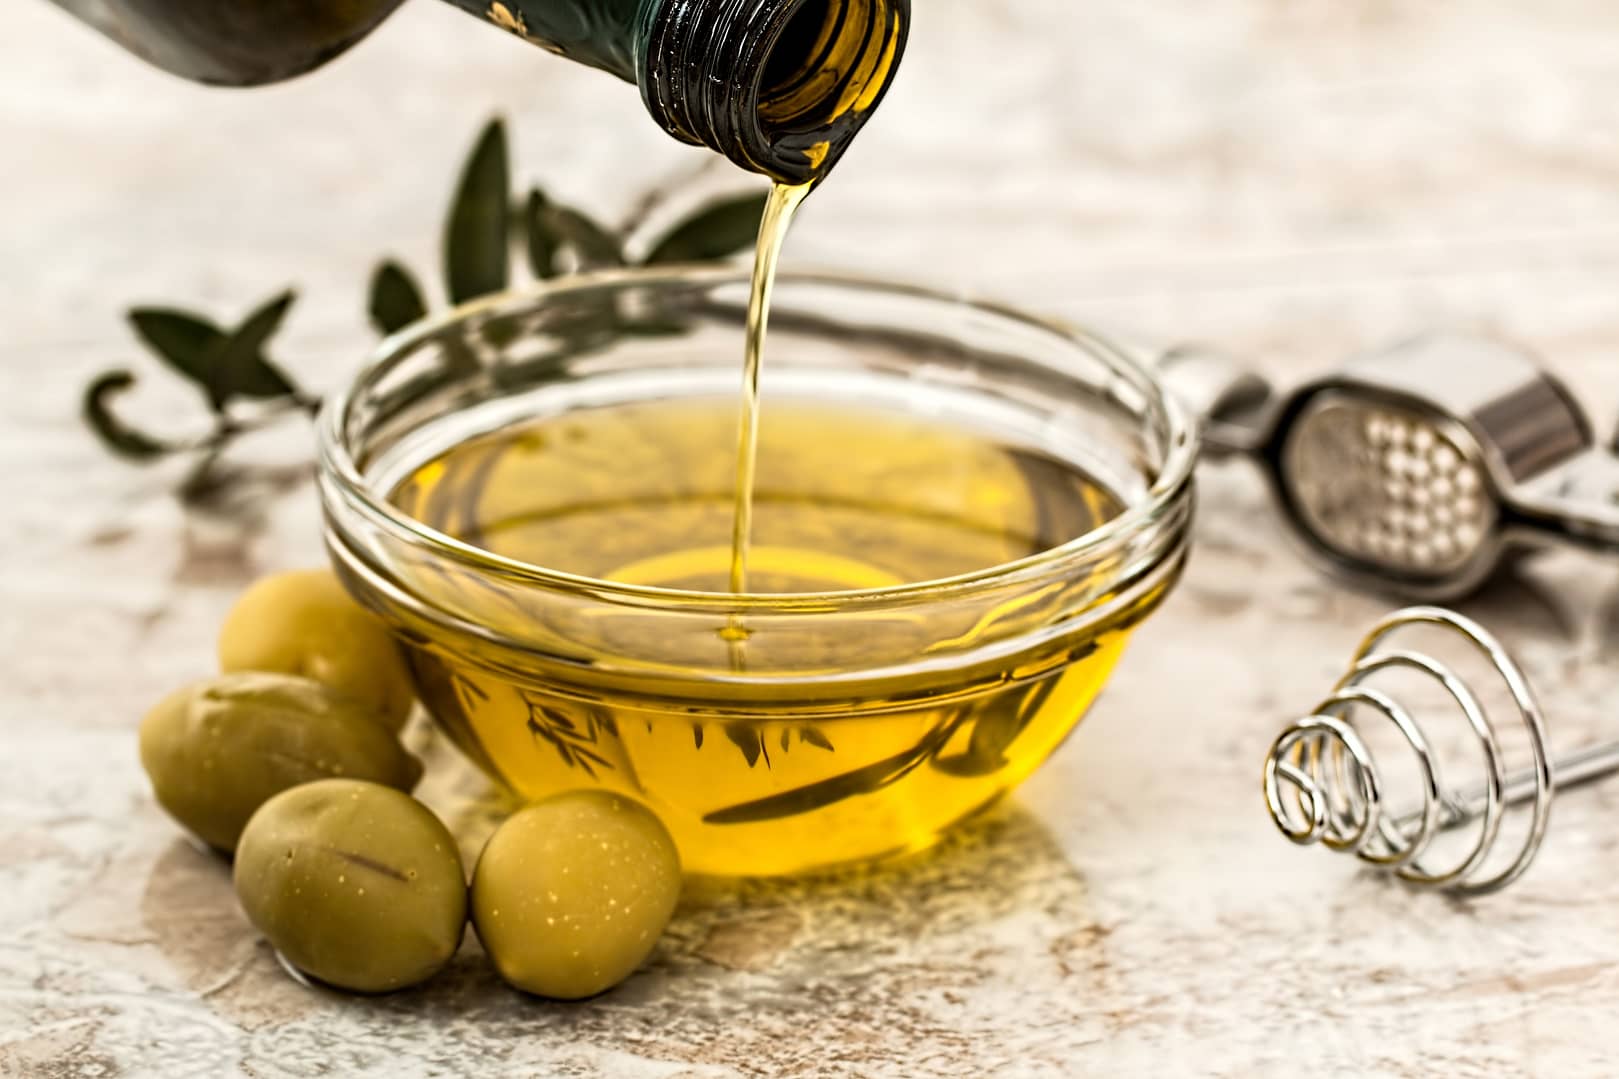 avoid undiluted essential oils